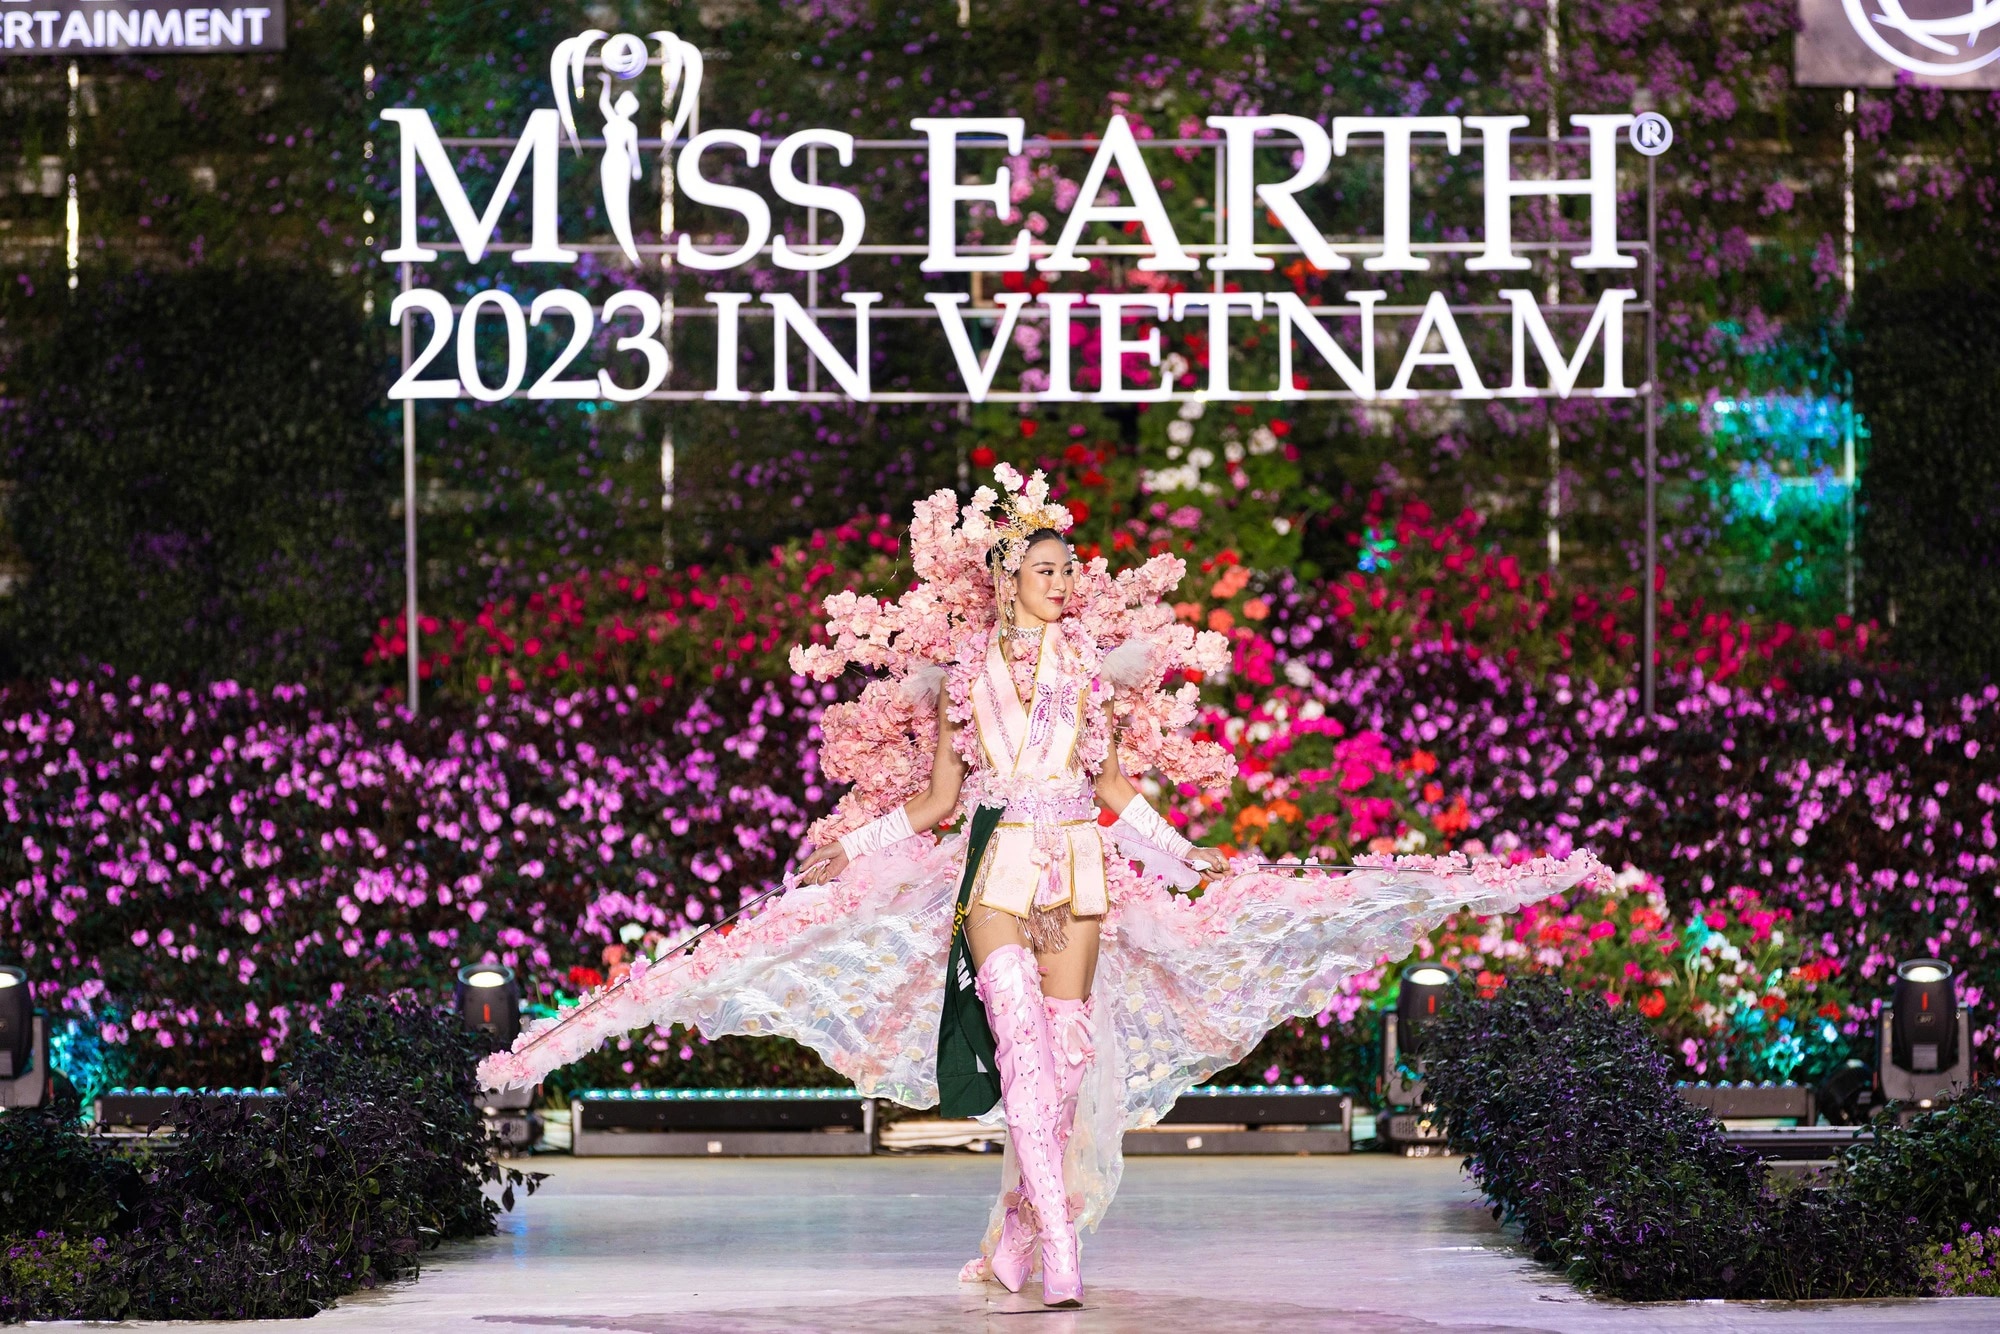 Bán kết Miss Earth 2023 màn trình Trang phục Dân tộc bùng nổ hình ảnh cỏ hoa, muông thú - Ảnh 22.